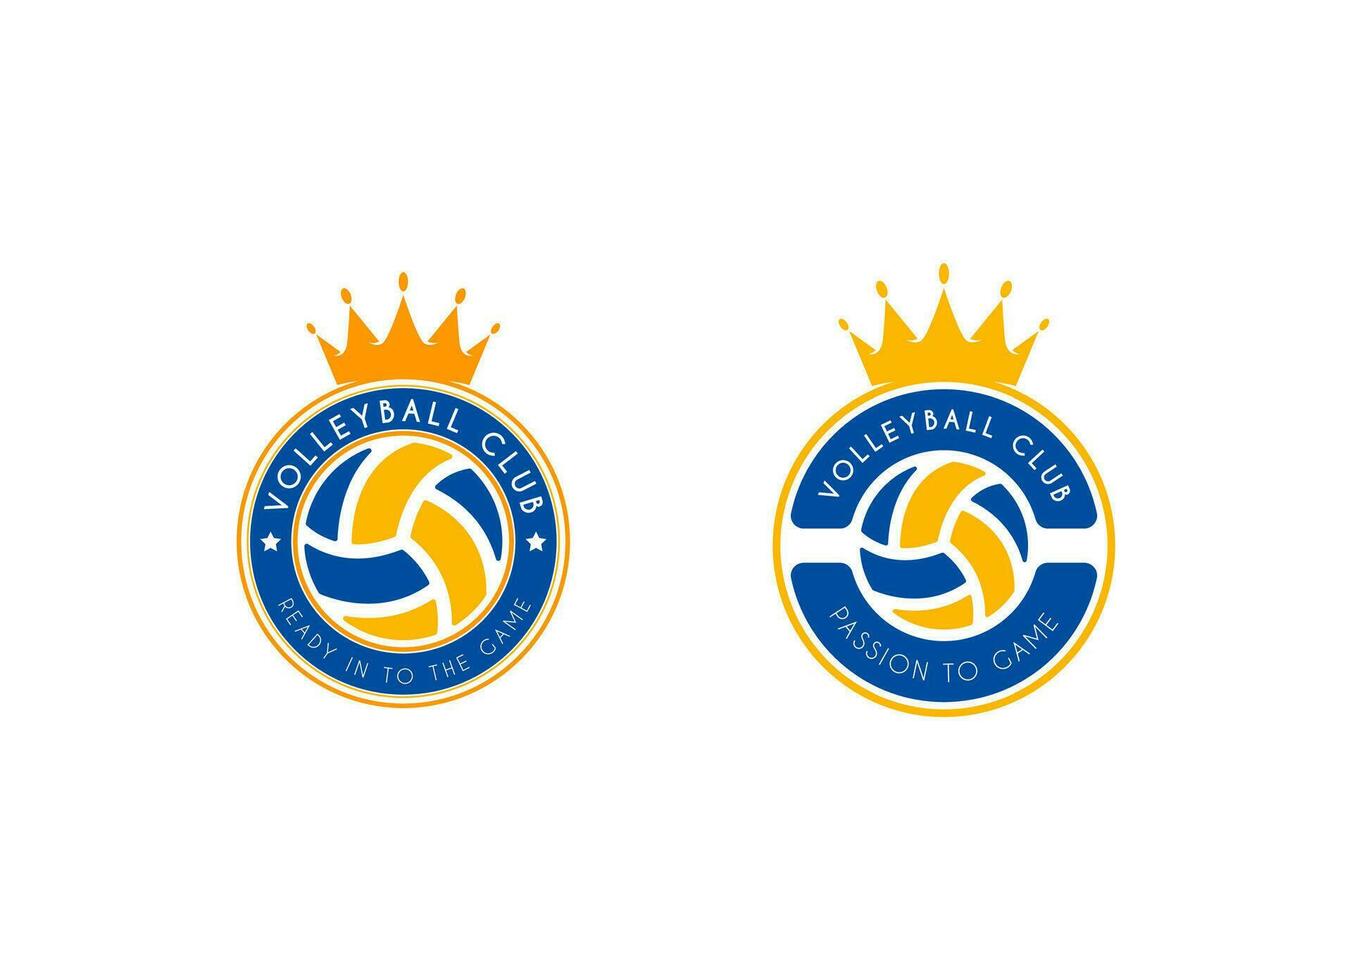 pallavolo club emblema. palla distintivo logo, pallavolo palla squadra gioco club elementi, vettore logo illustrazione in forma per campionato o squadra